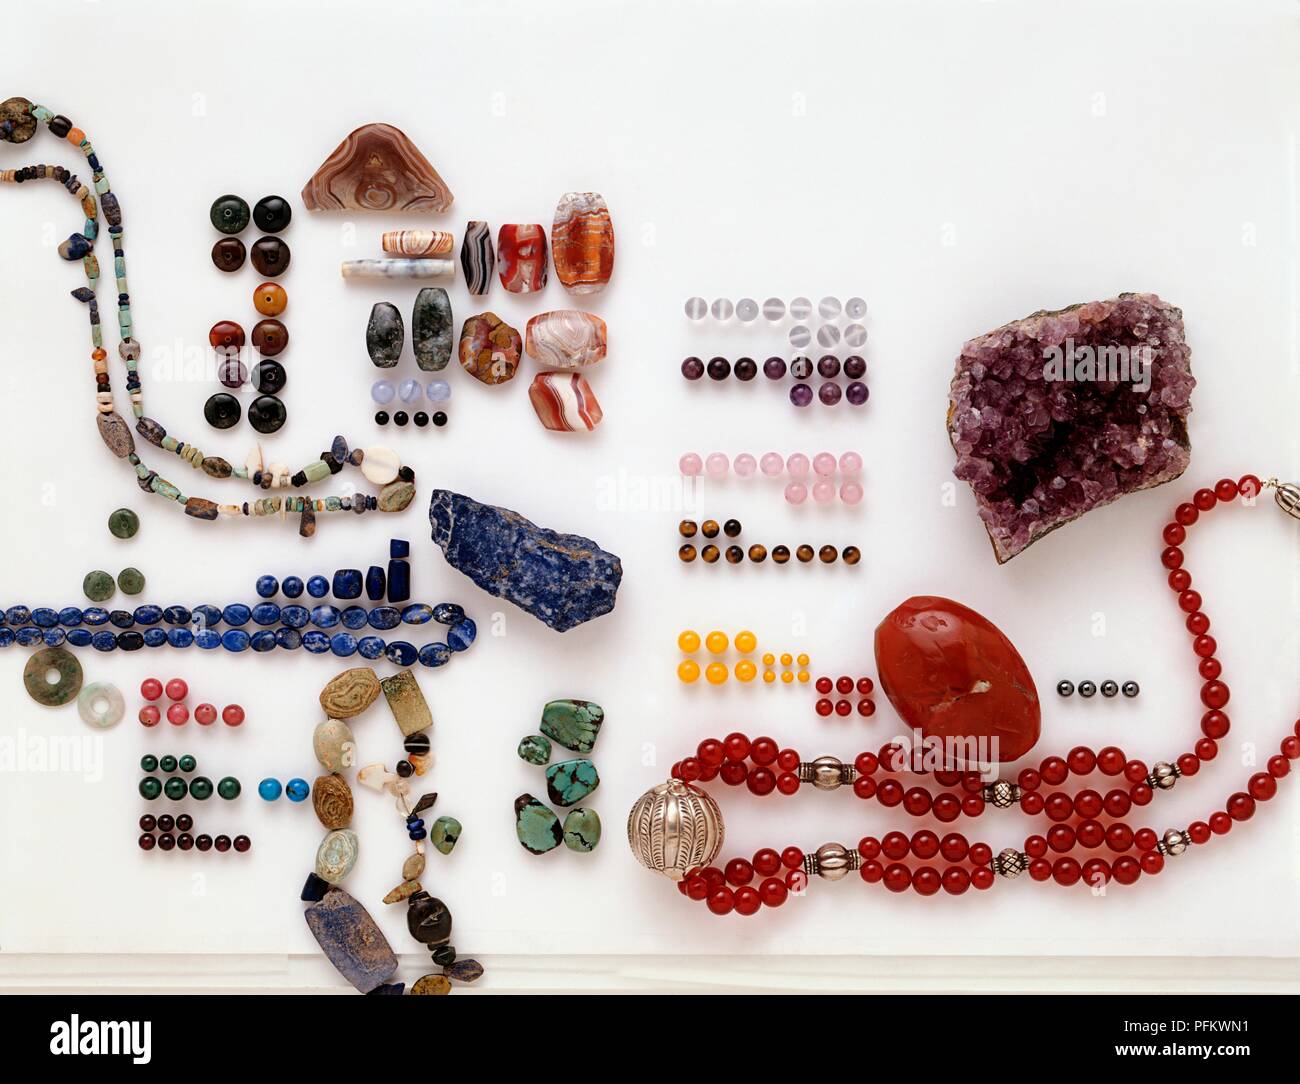 Collection de minéraux semi-précieux dont l'améthyste, la cornaline et le lapis-lazuli, et semi-précieuses, perles de quartz, calcédoine, agate, lapis-lazuli, turquoise, malachite, rhodonite, grenat Banque D'Images